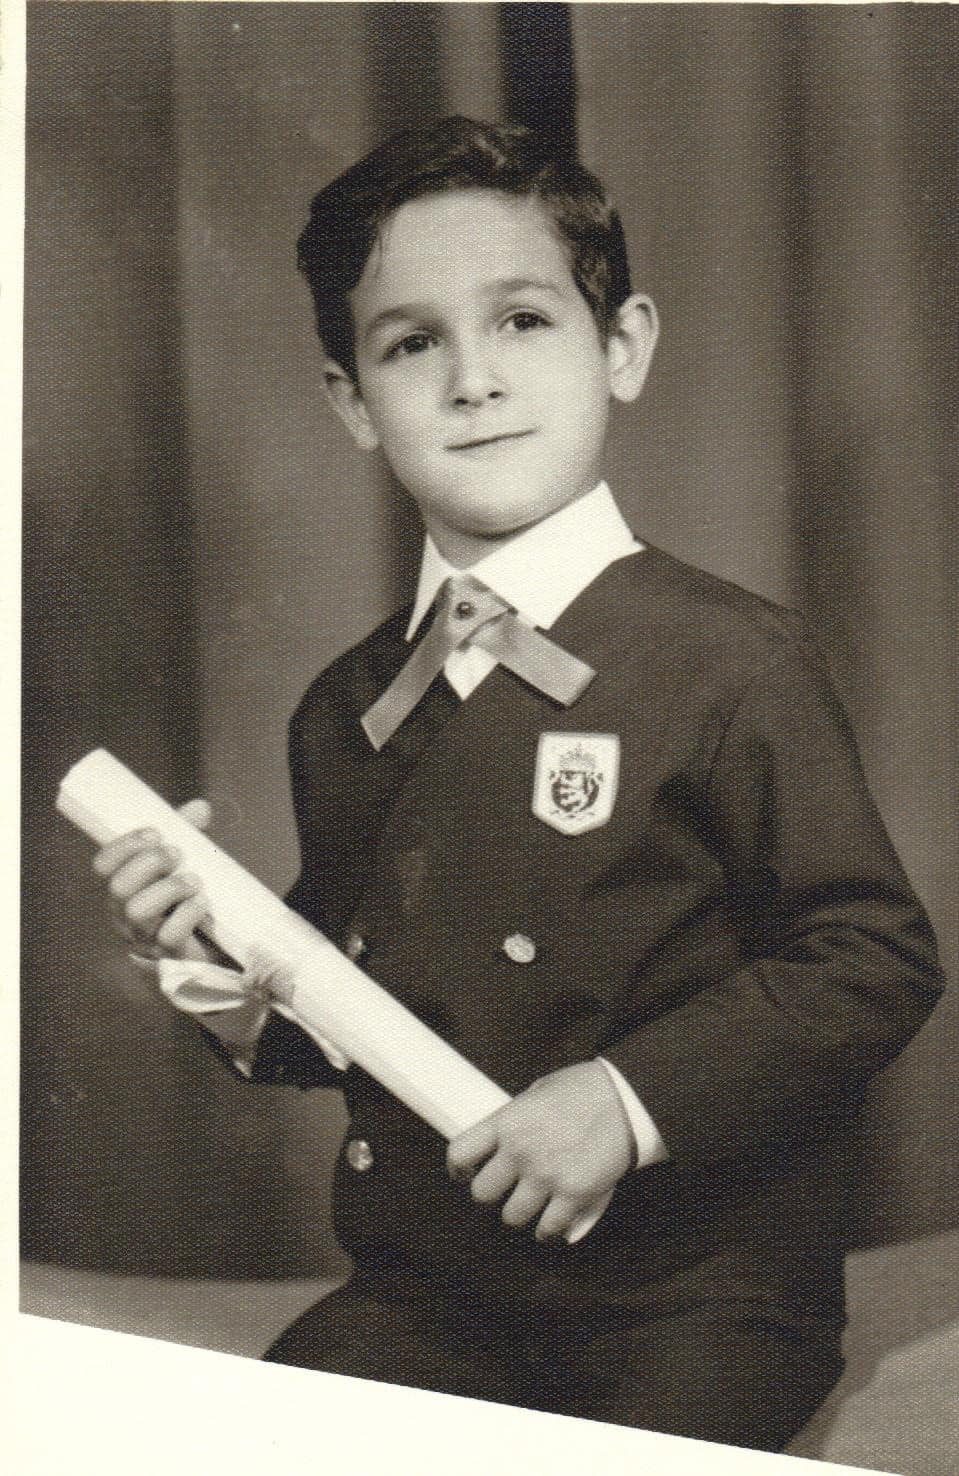 Viken as a boy.